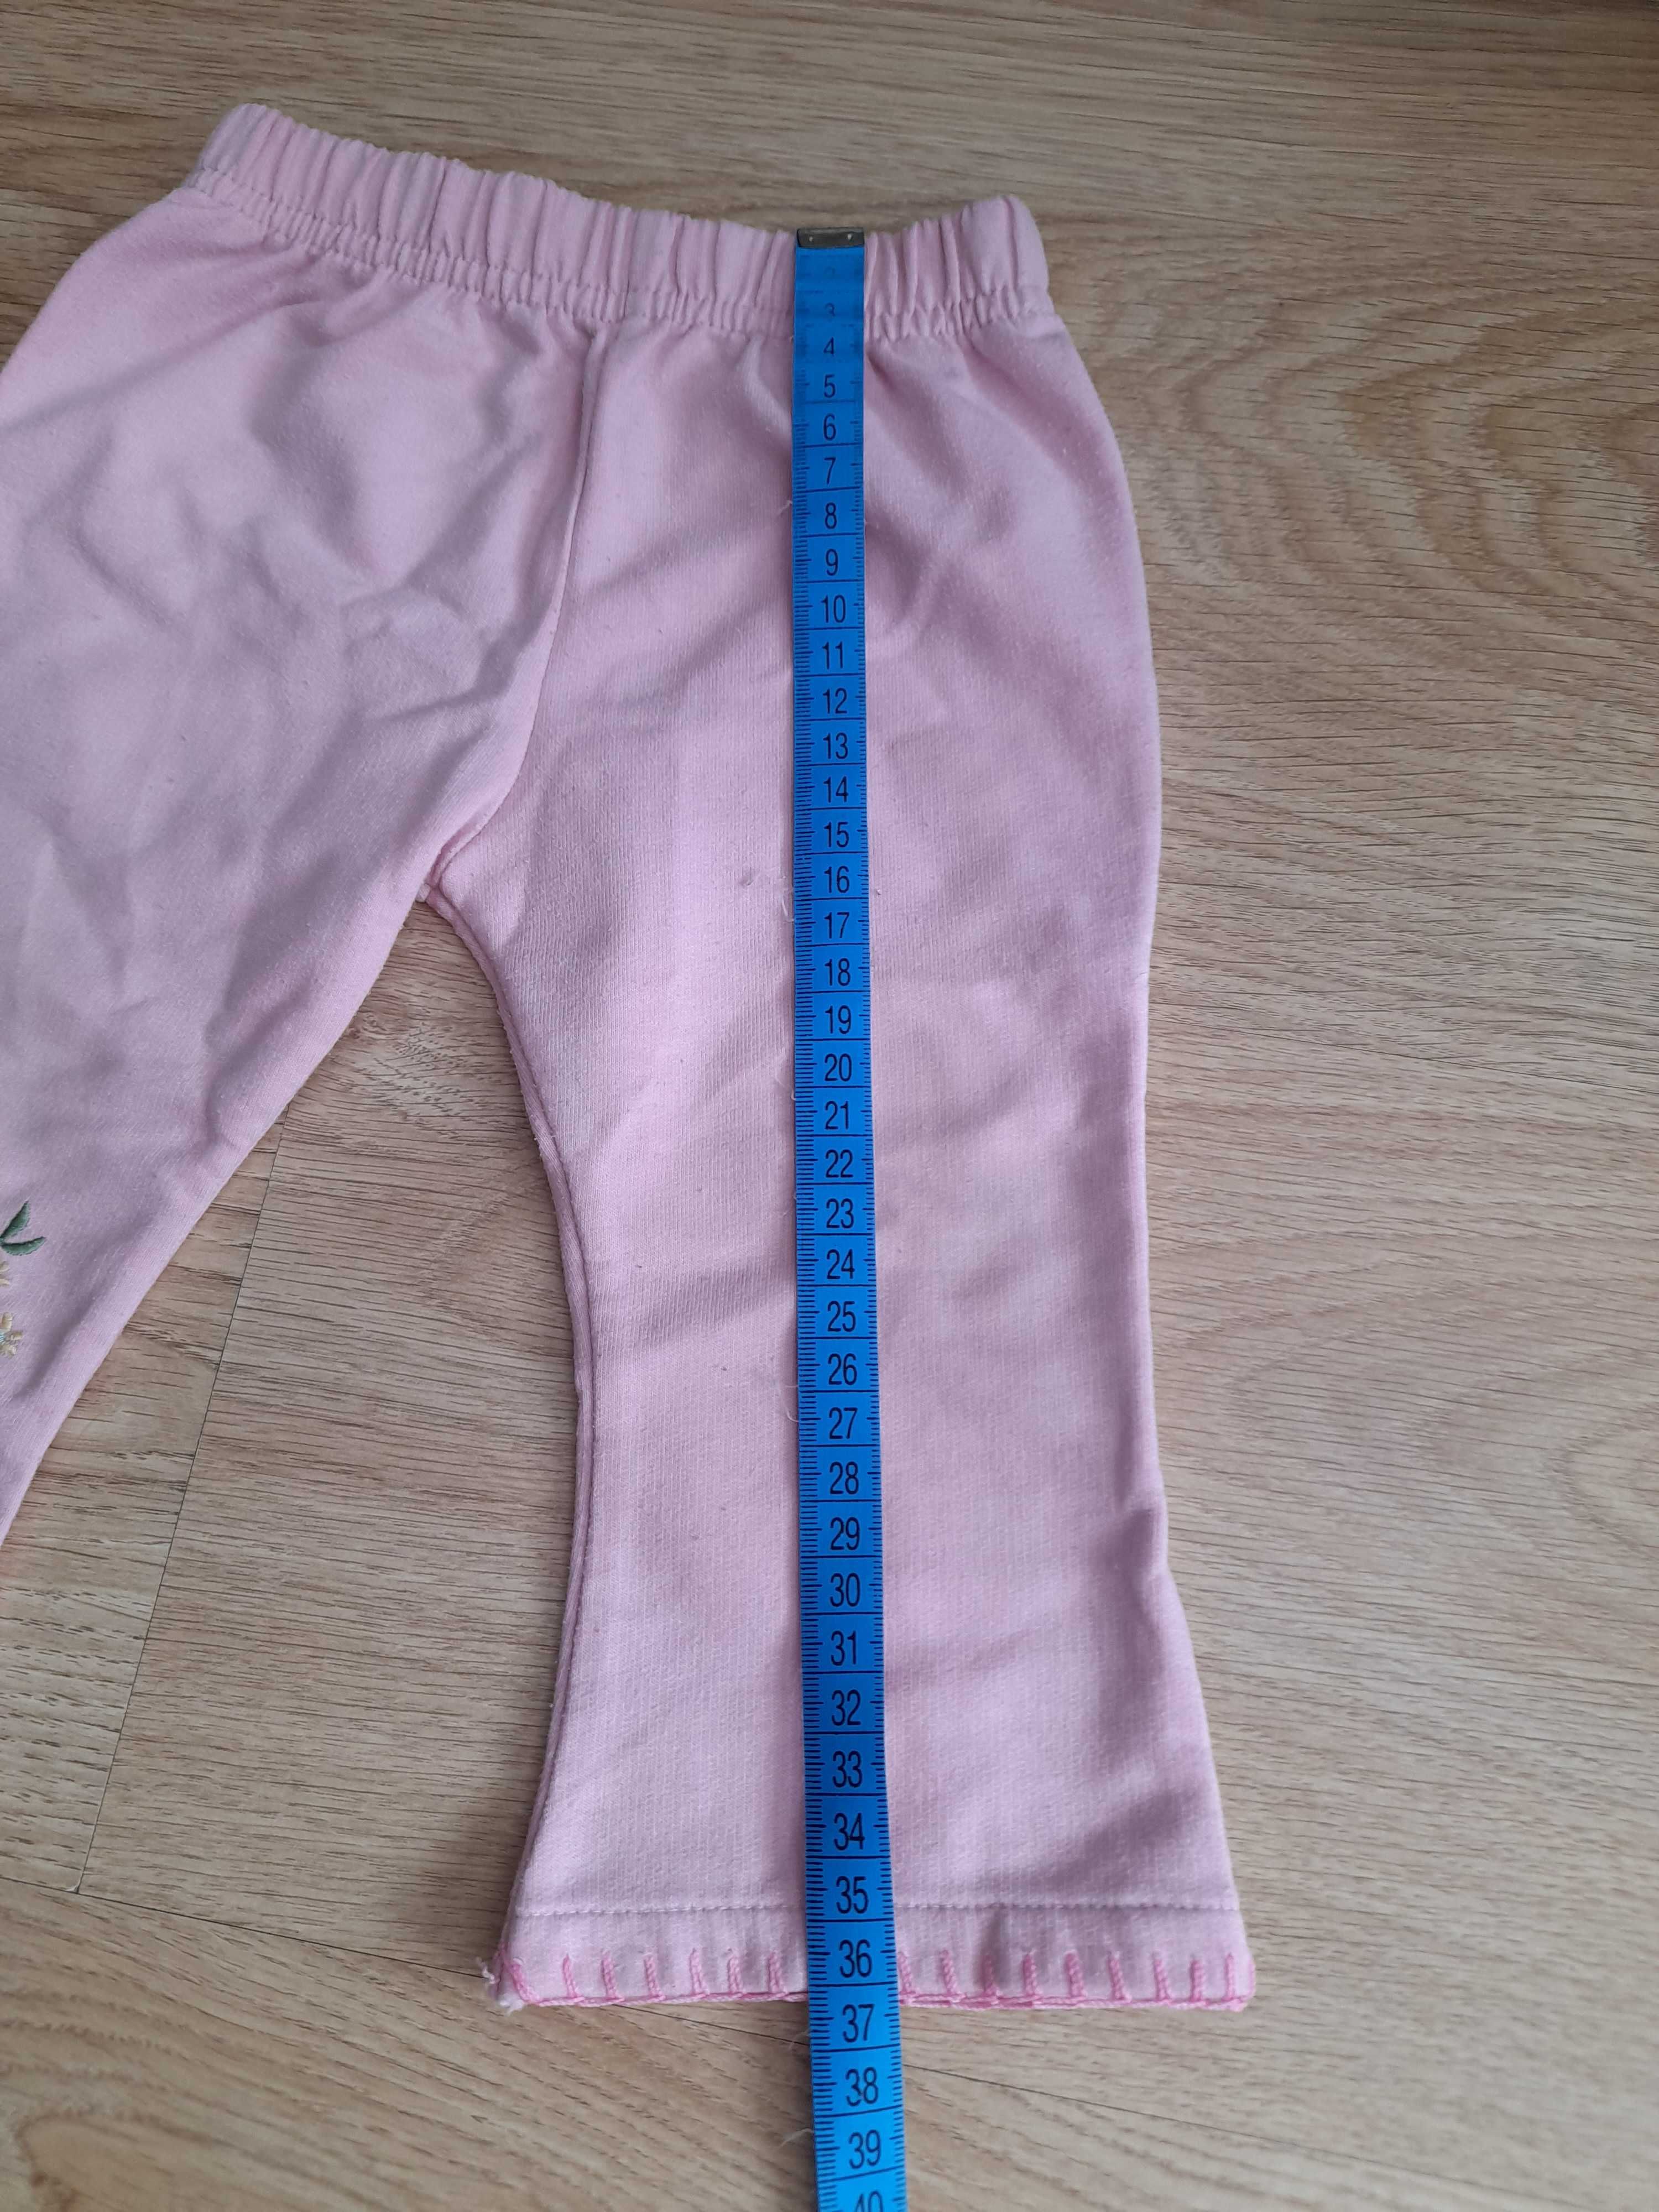 Spodnie dziewczęce różowe bawełniane rozm. 68 cm